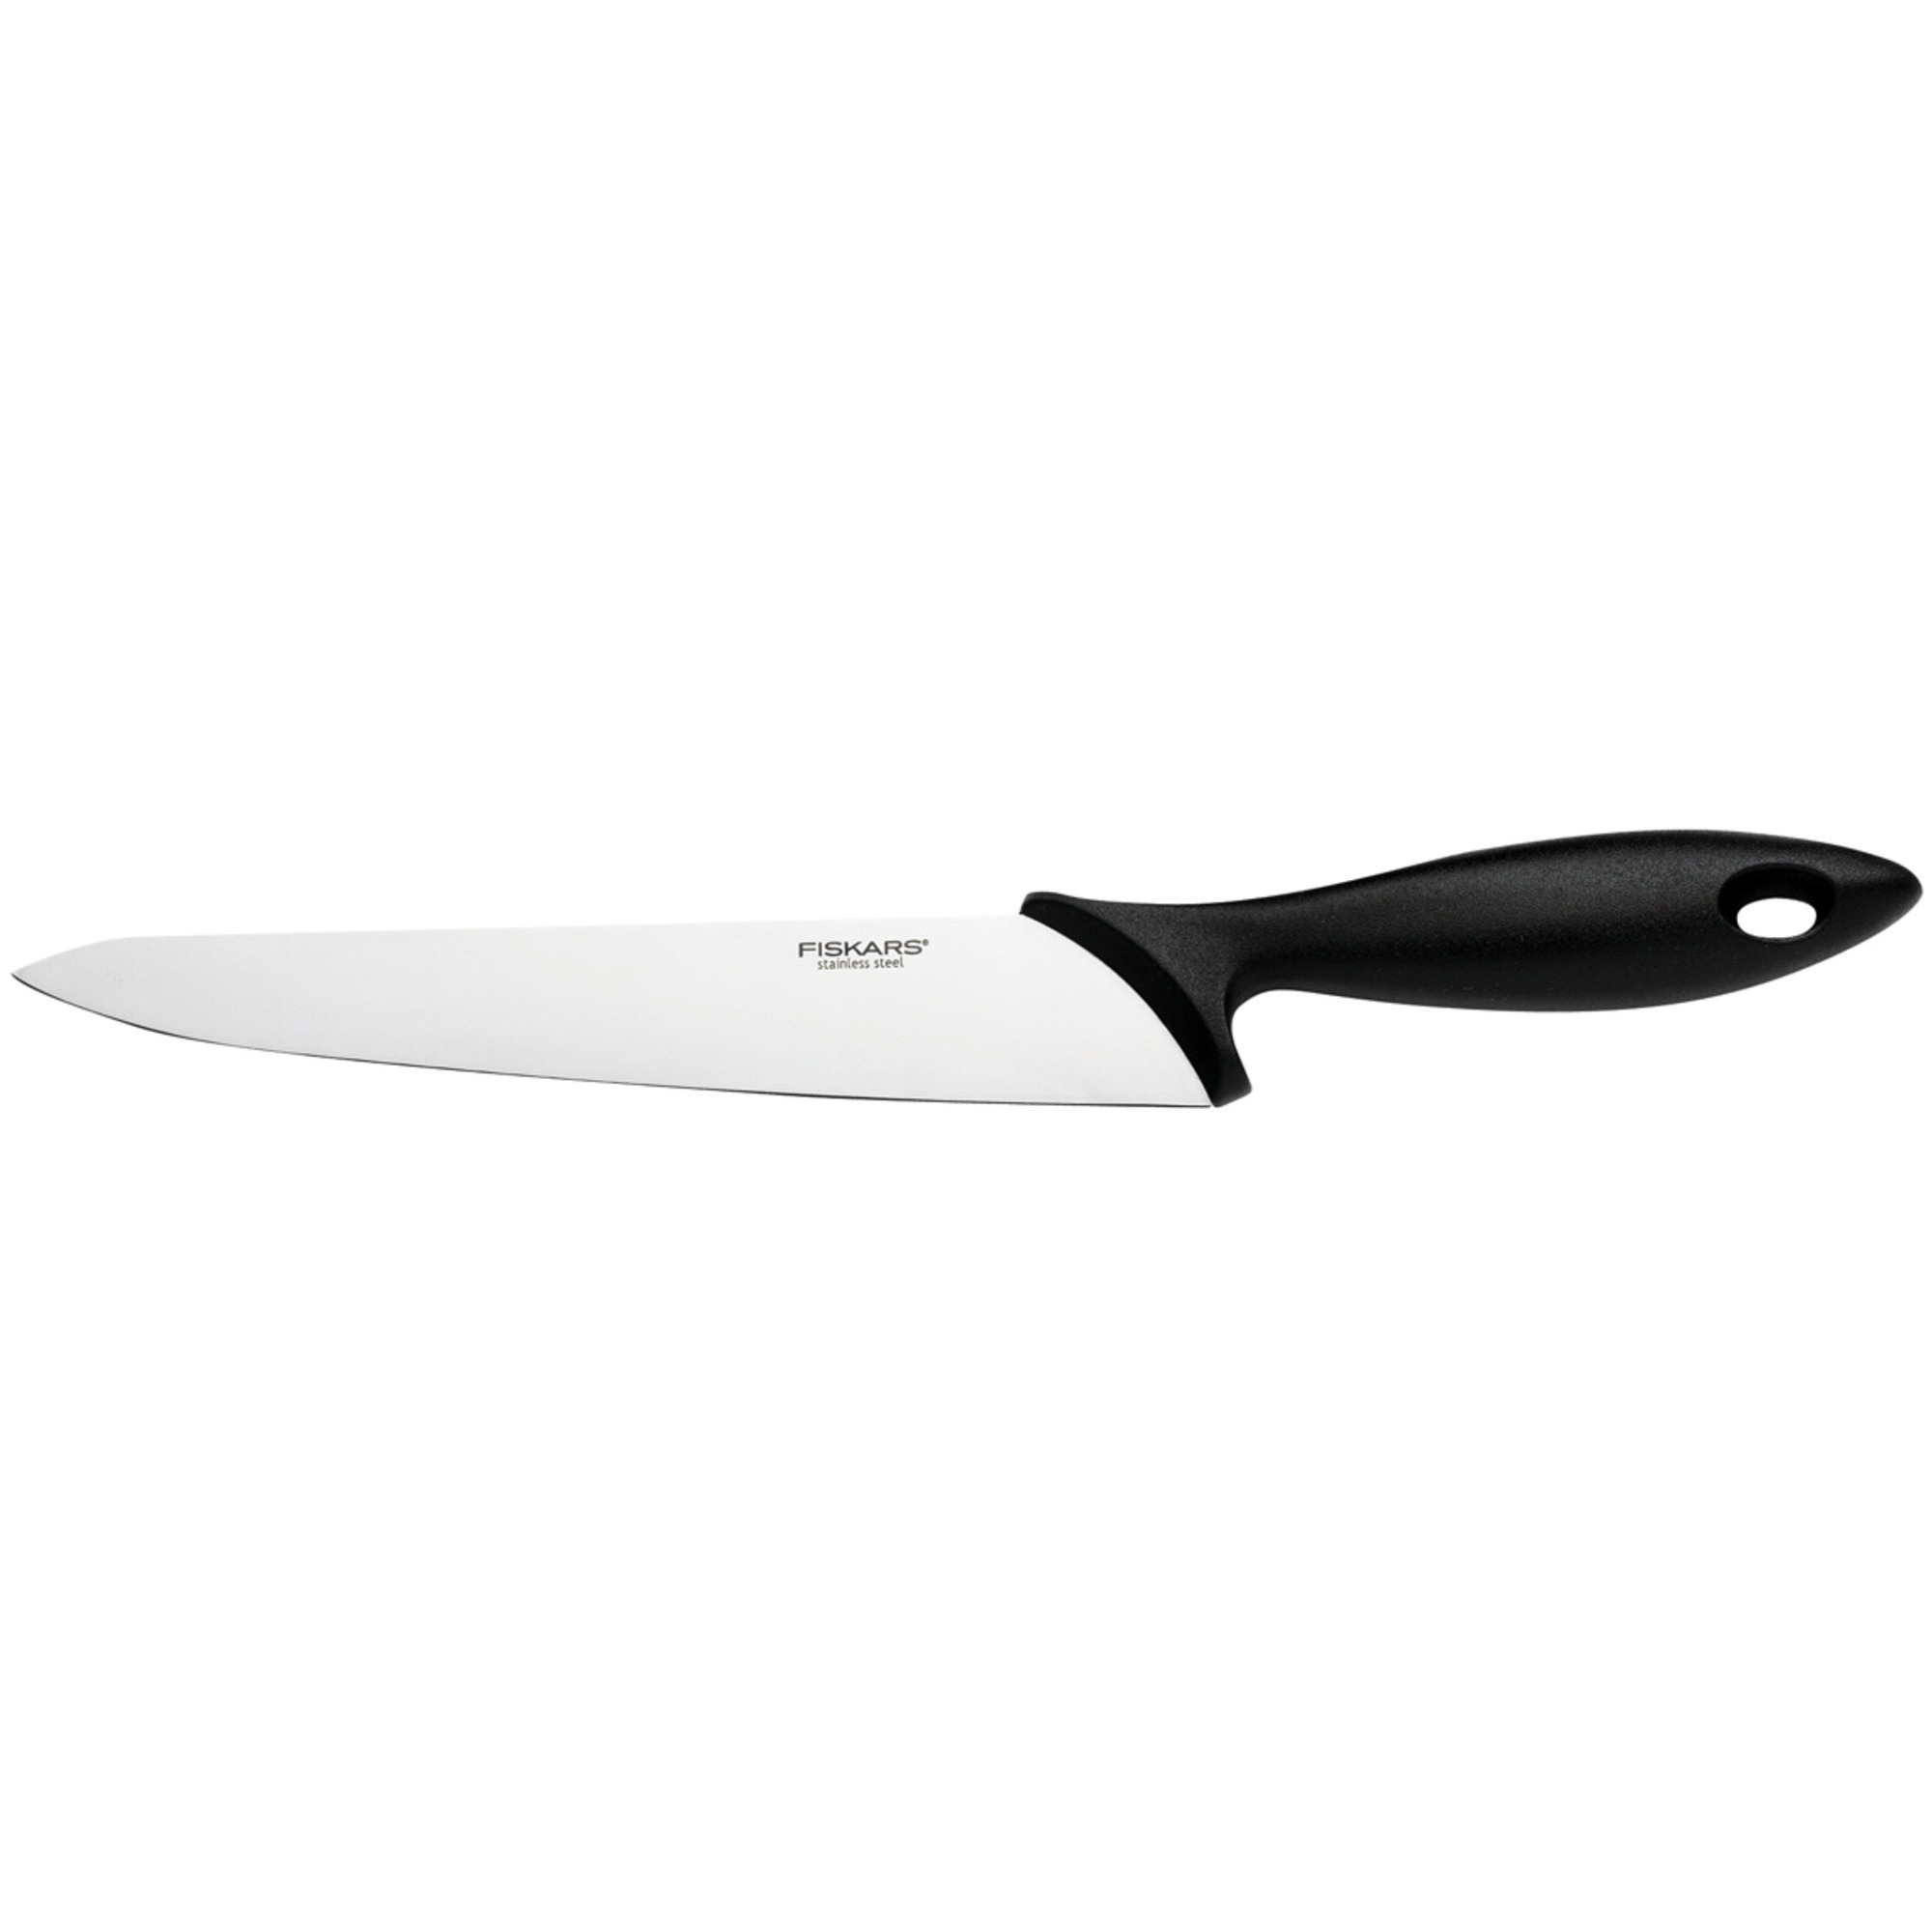 #1 på vores liste over køkkenkniv er Køkkenkniv